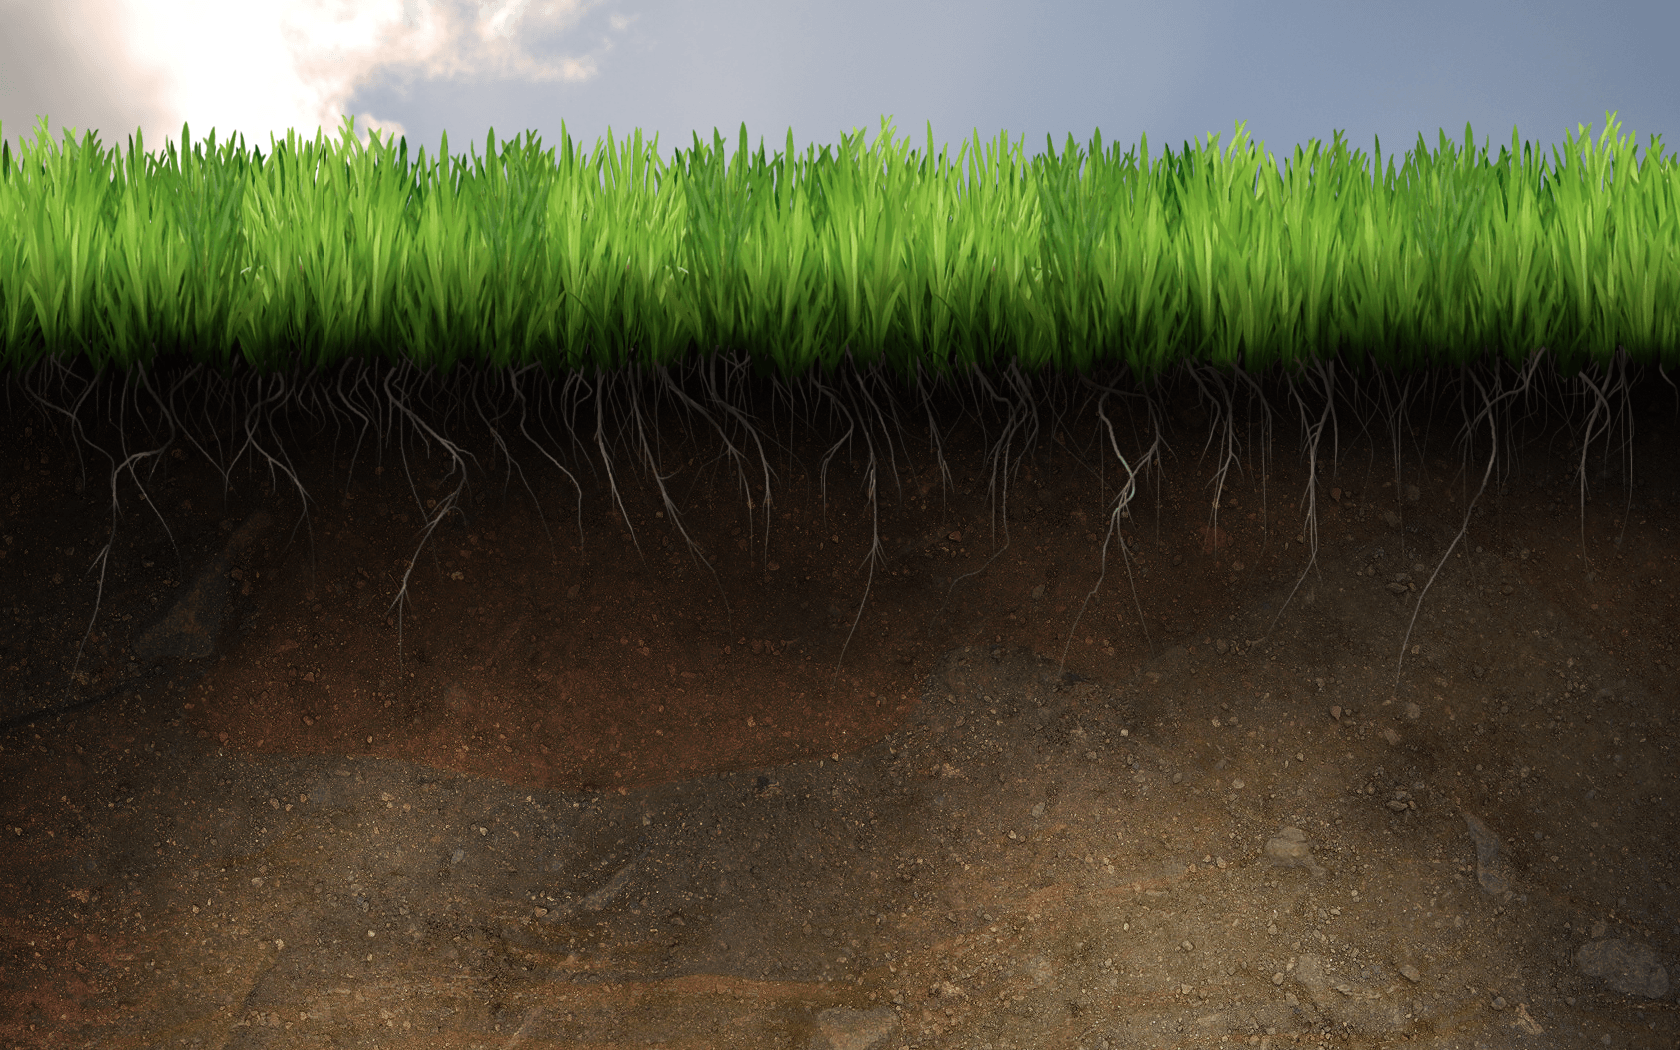 V.75: HD Image of Soil, Ultra HD 4K Soil Wallpaper